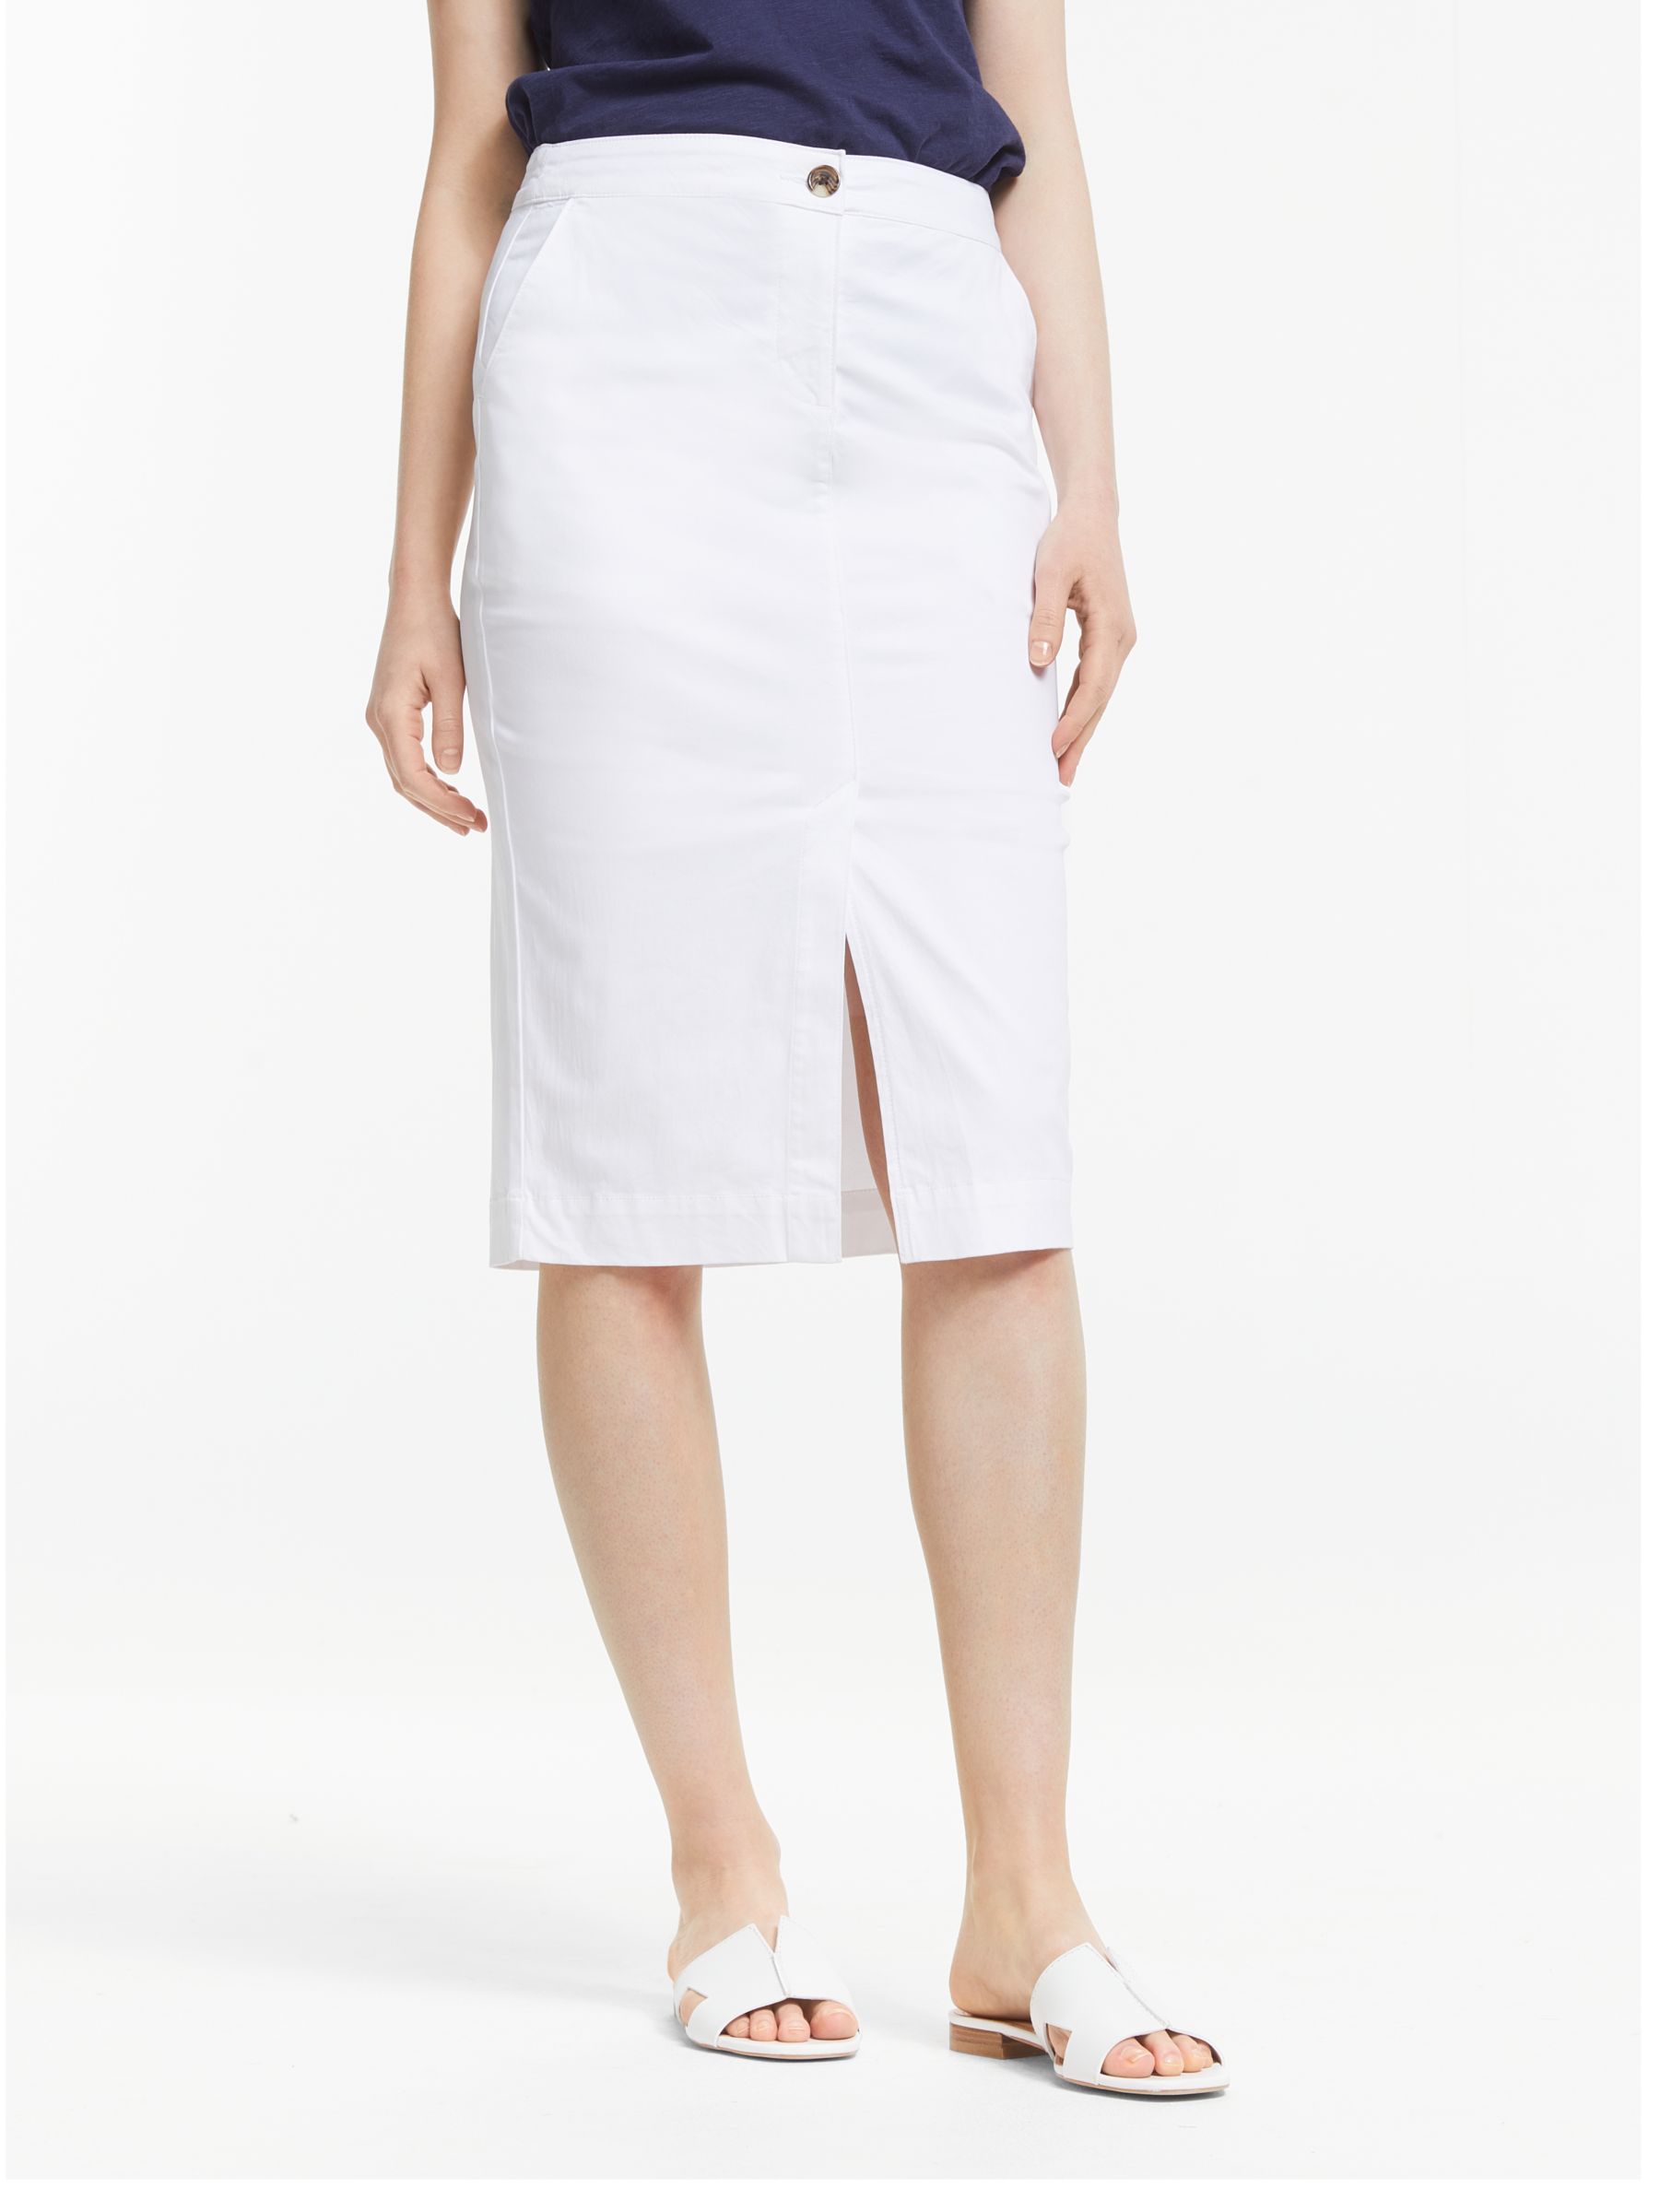 John Lewis & Partners Chino Pencil Skirt, White at John Lewis & Partners